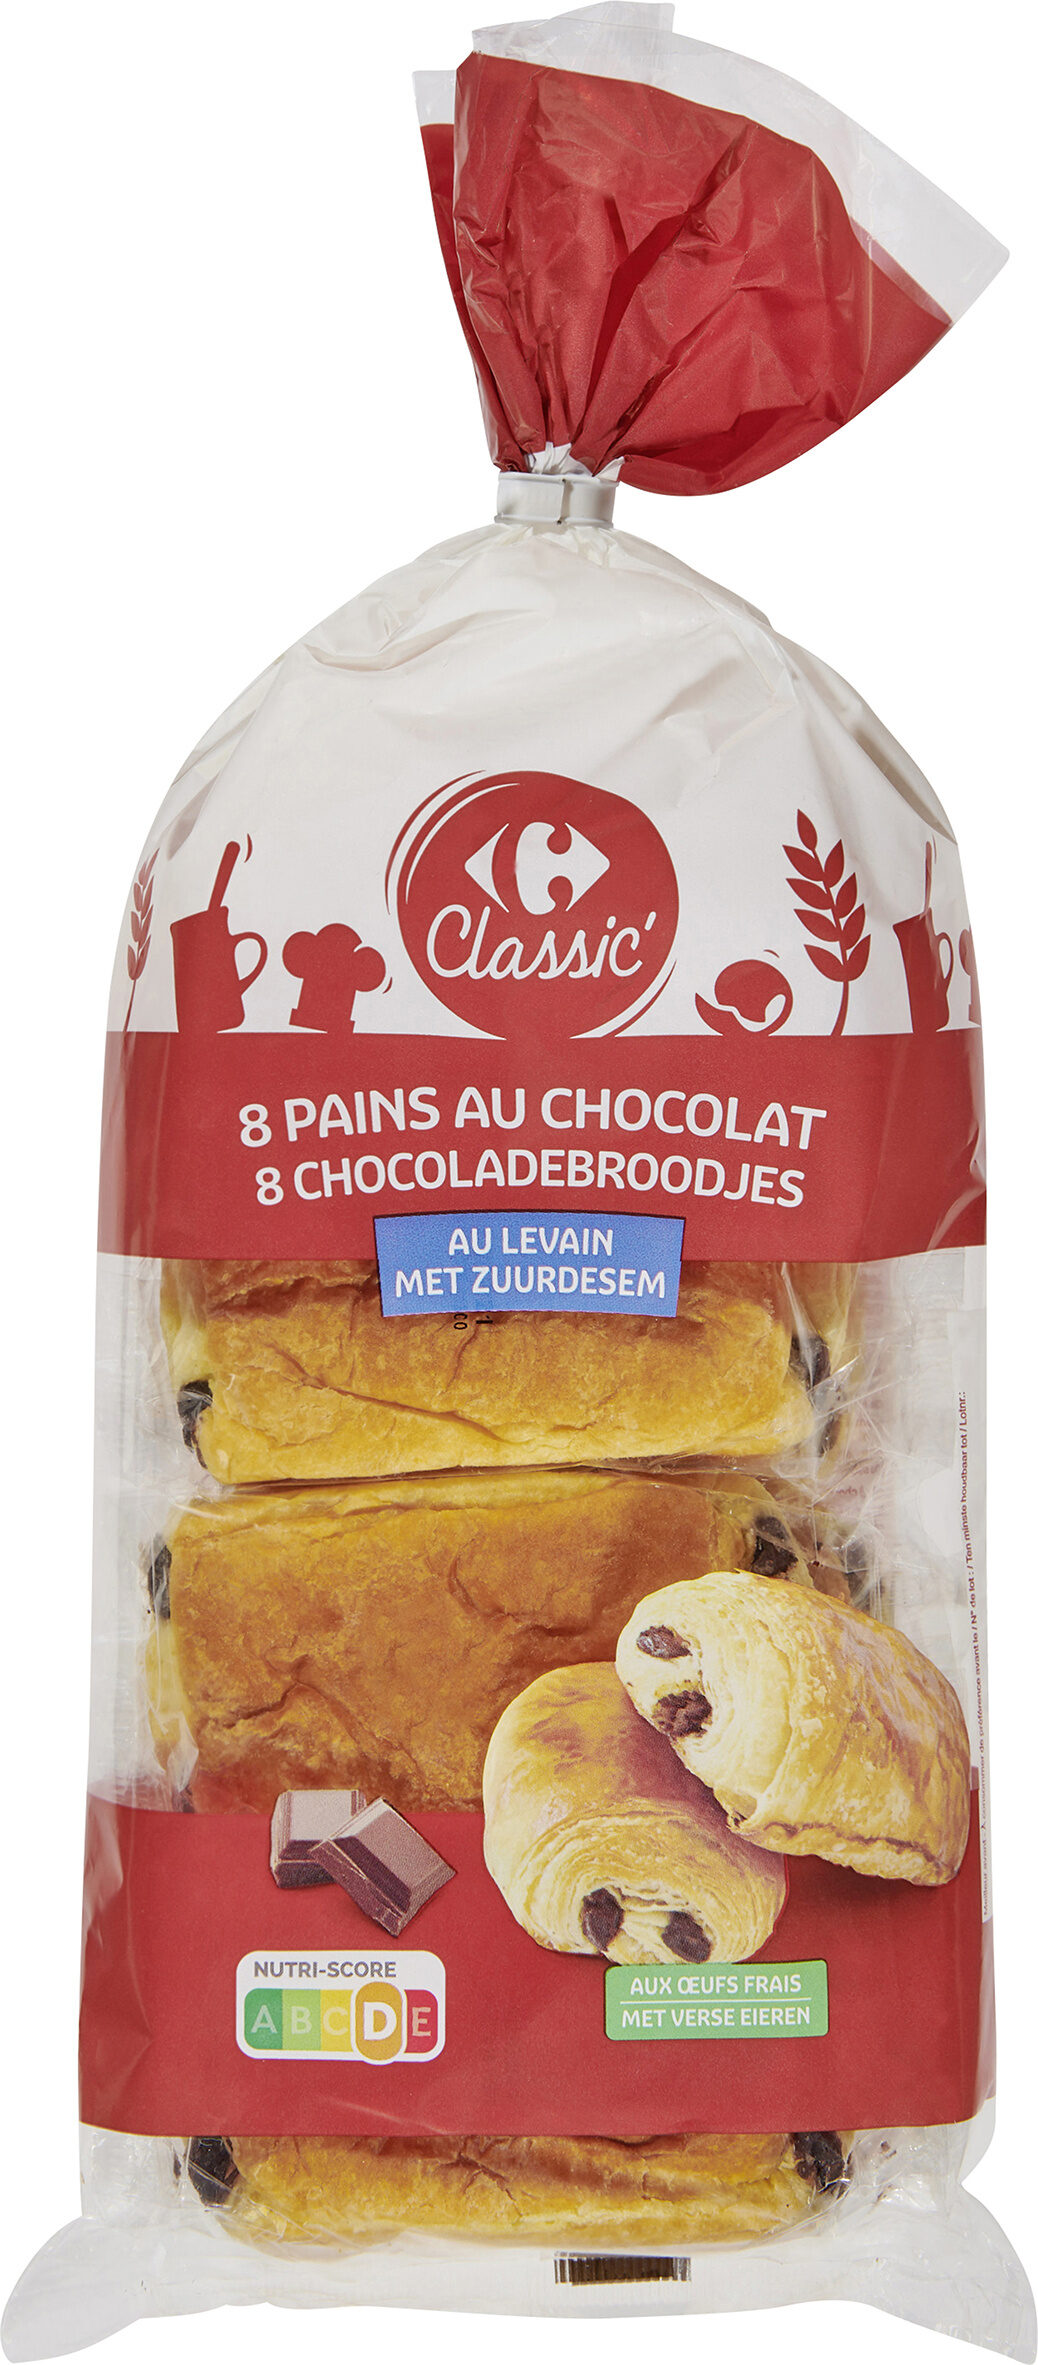 8 pains au chocolat Au levain - Produkt - fr